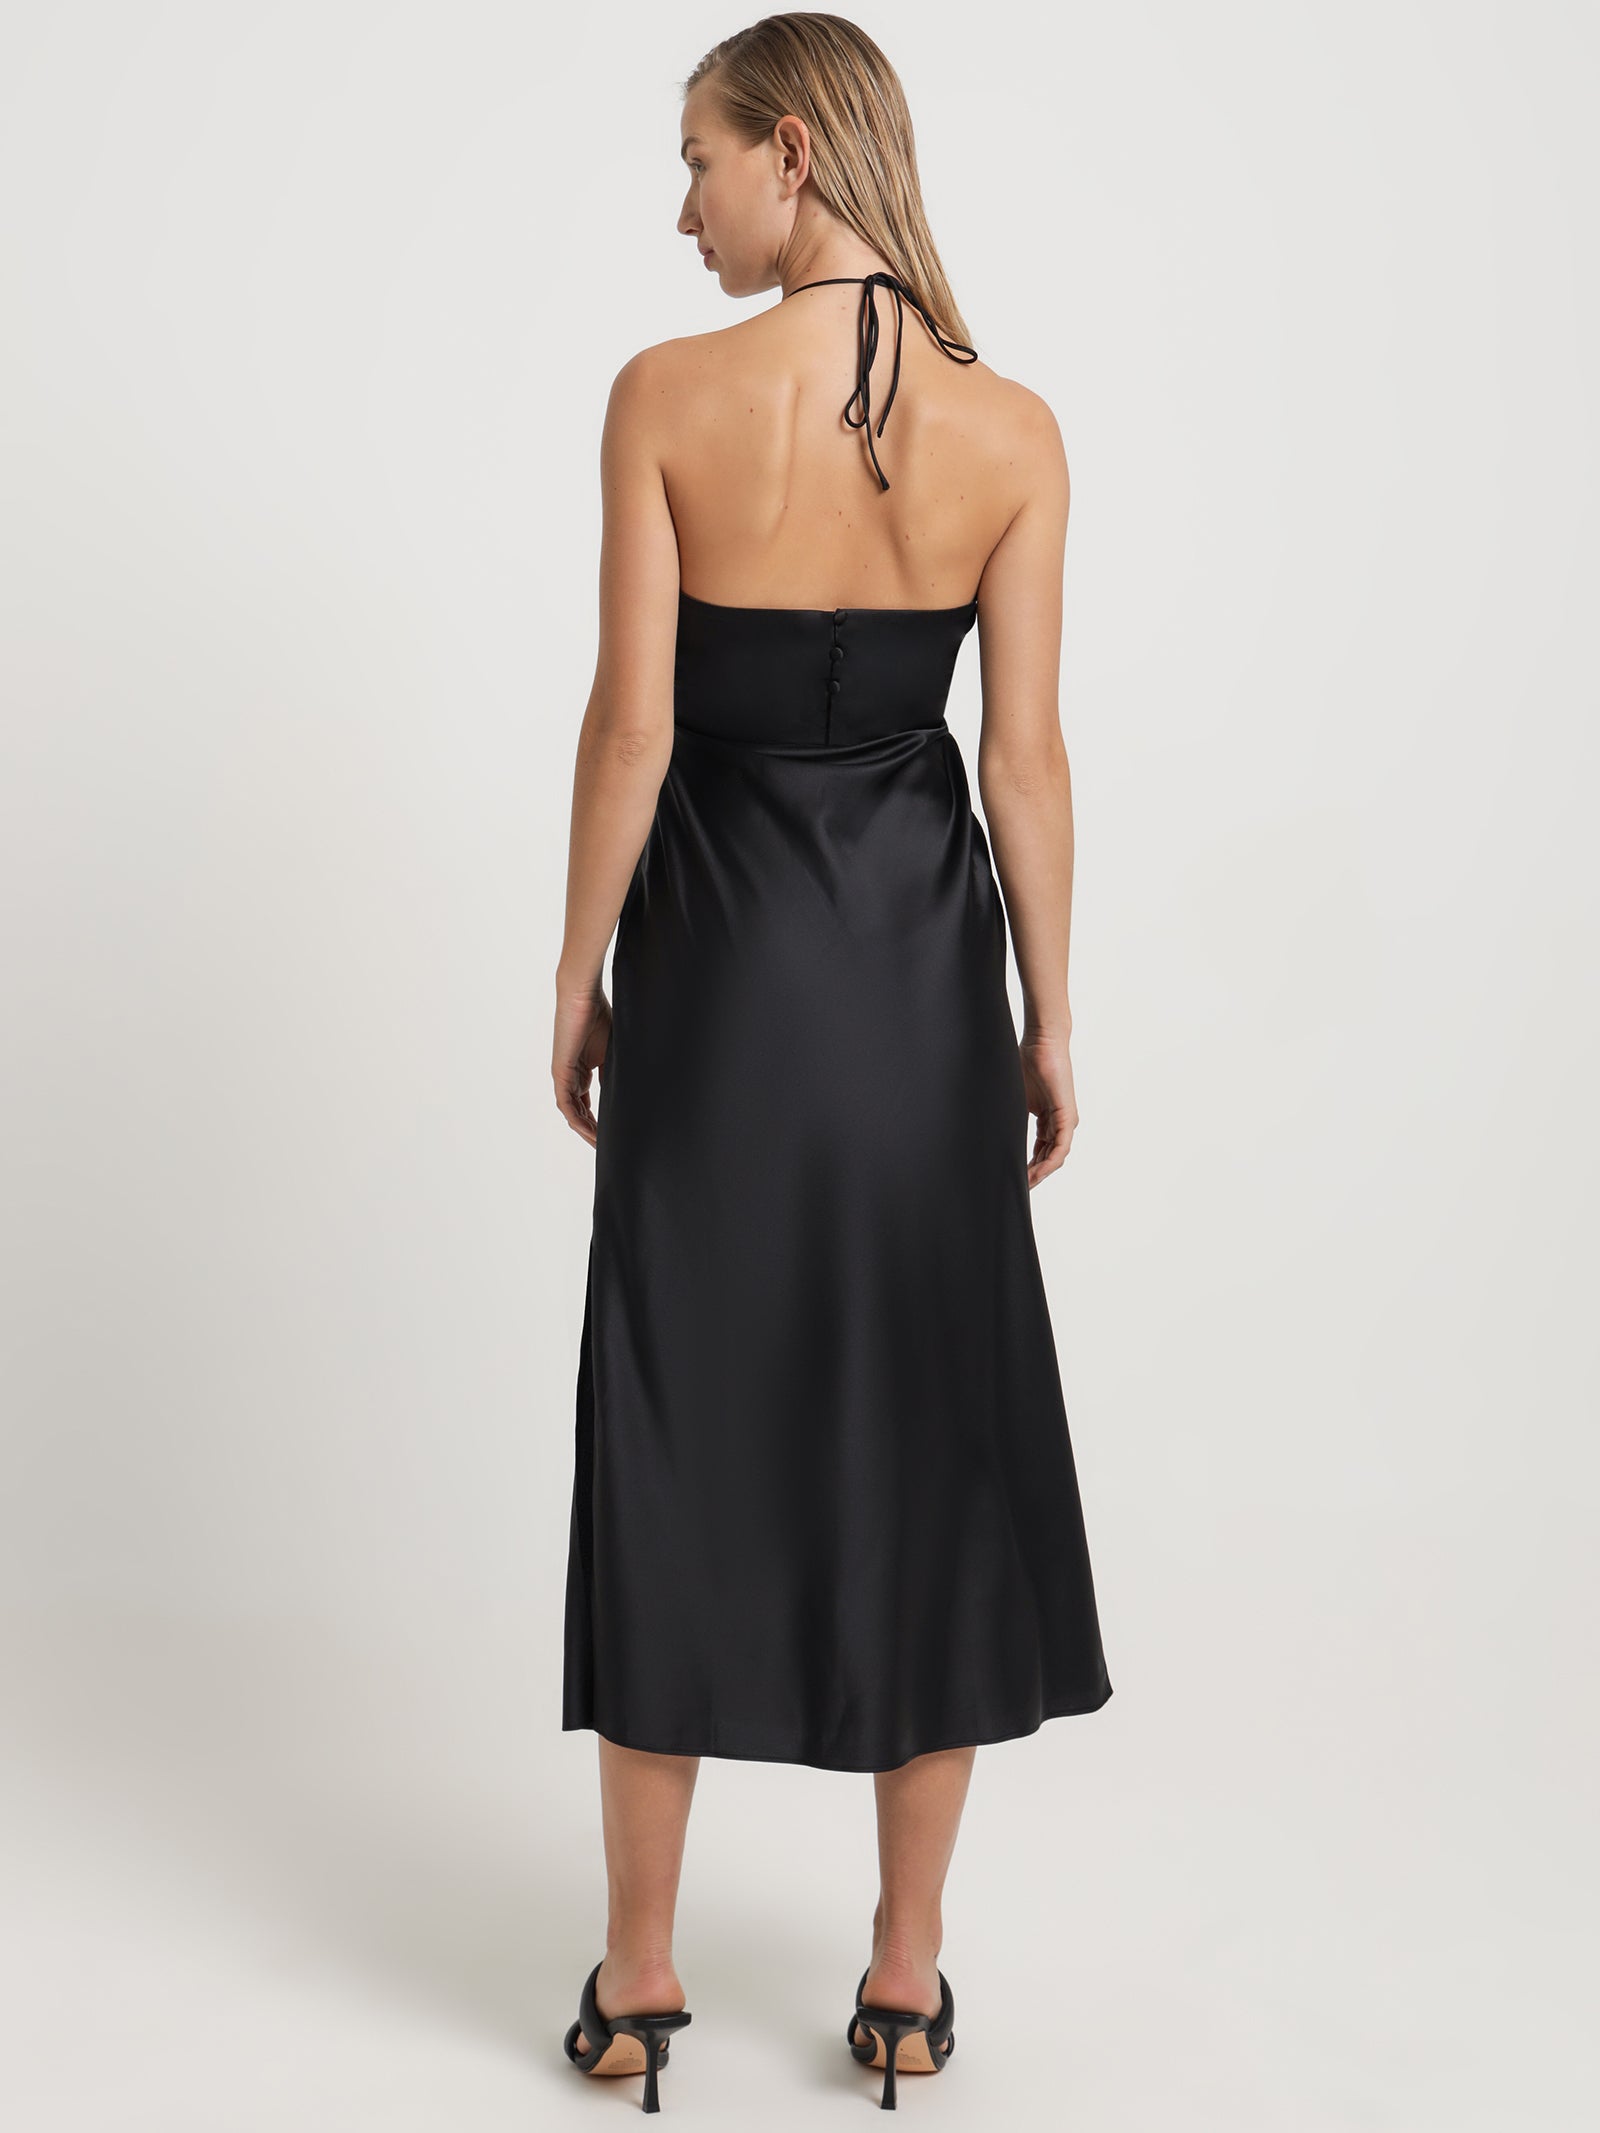 TOPSHOP BLACK SATIN SLIP MINI DRESS, Black Women's Short Dress